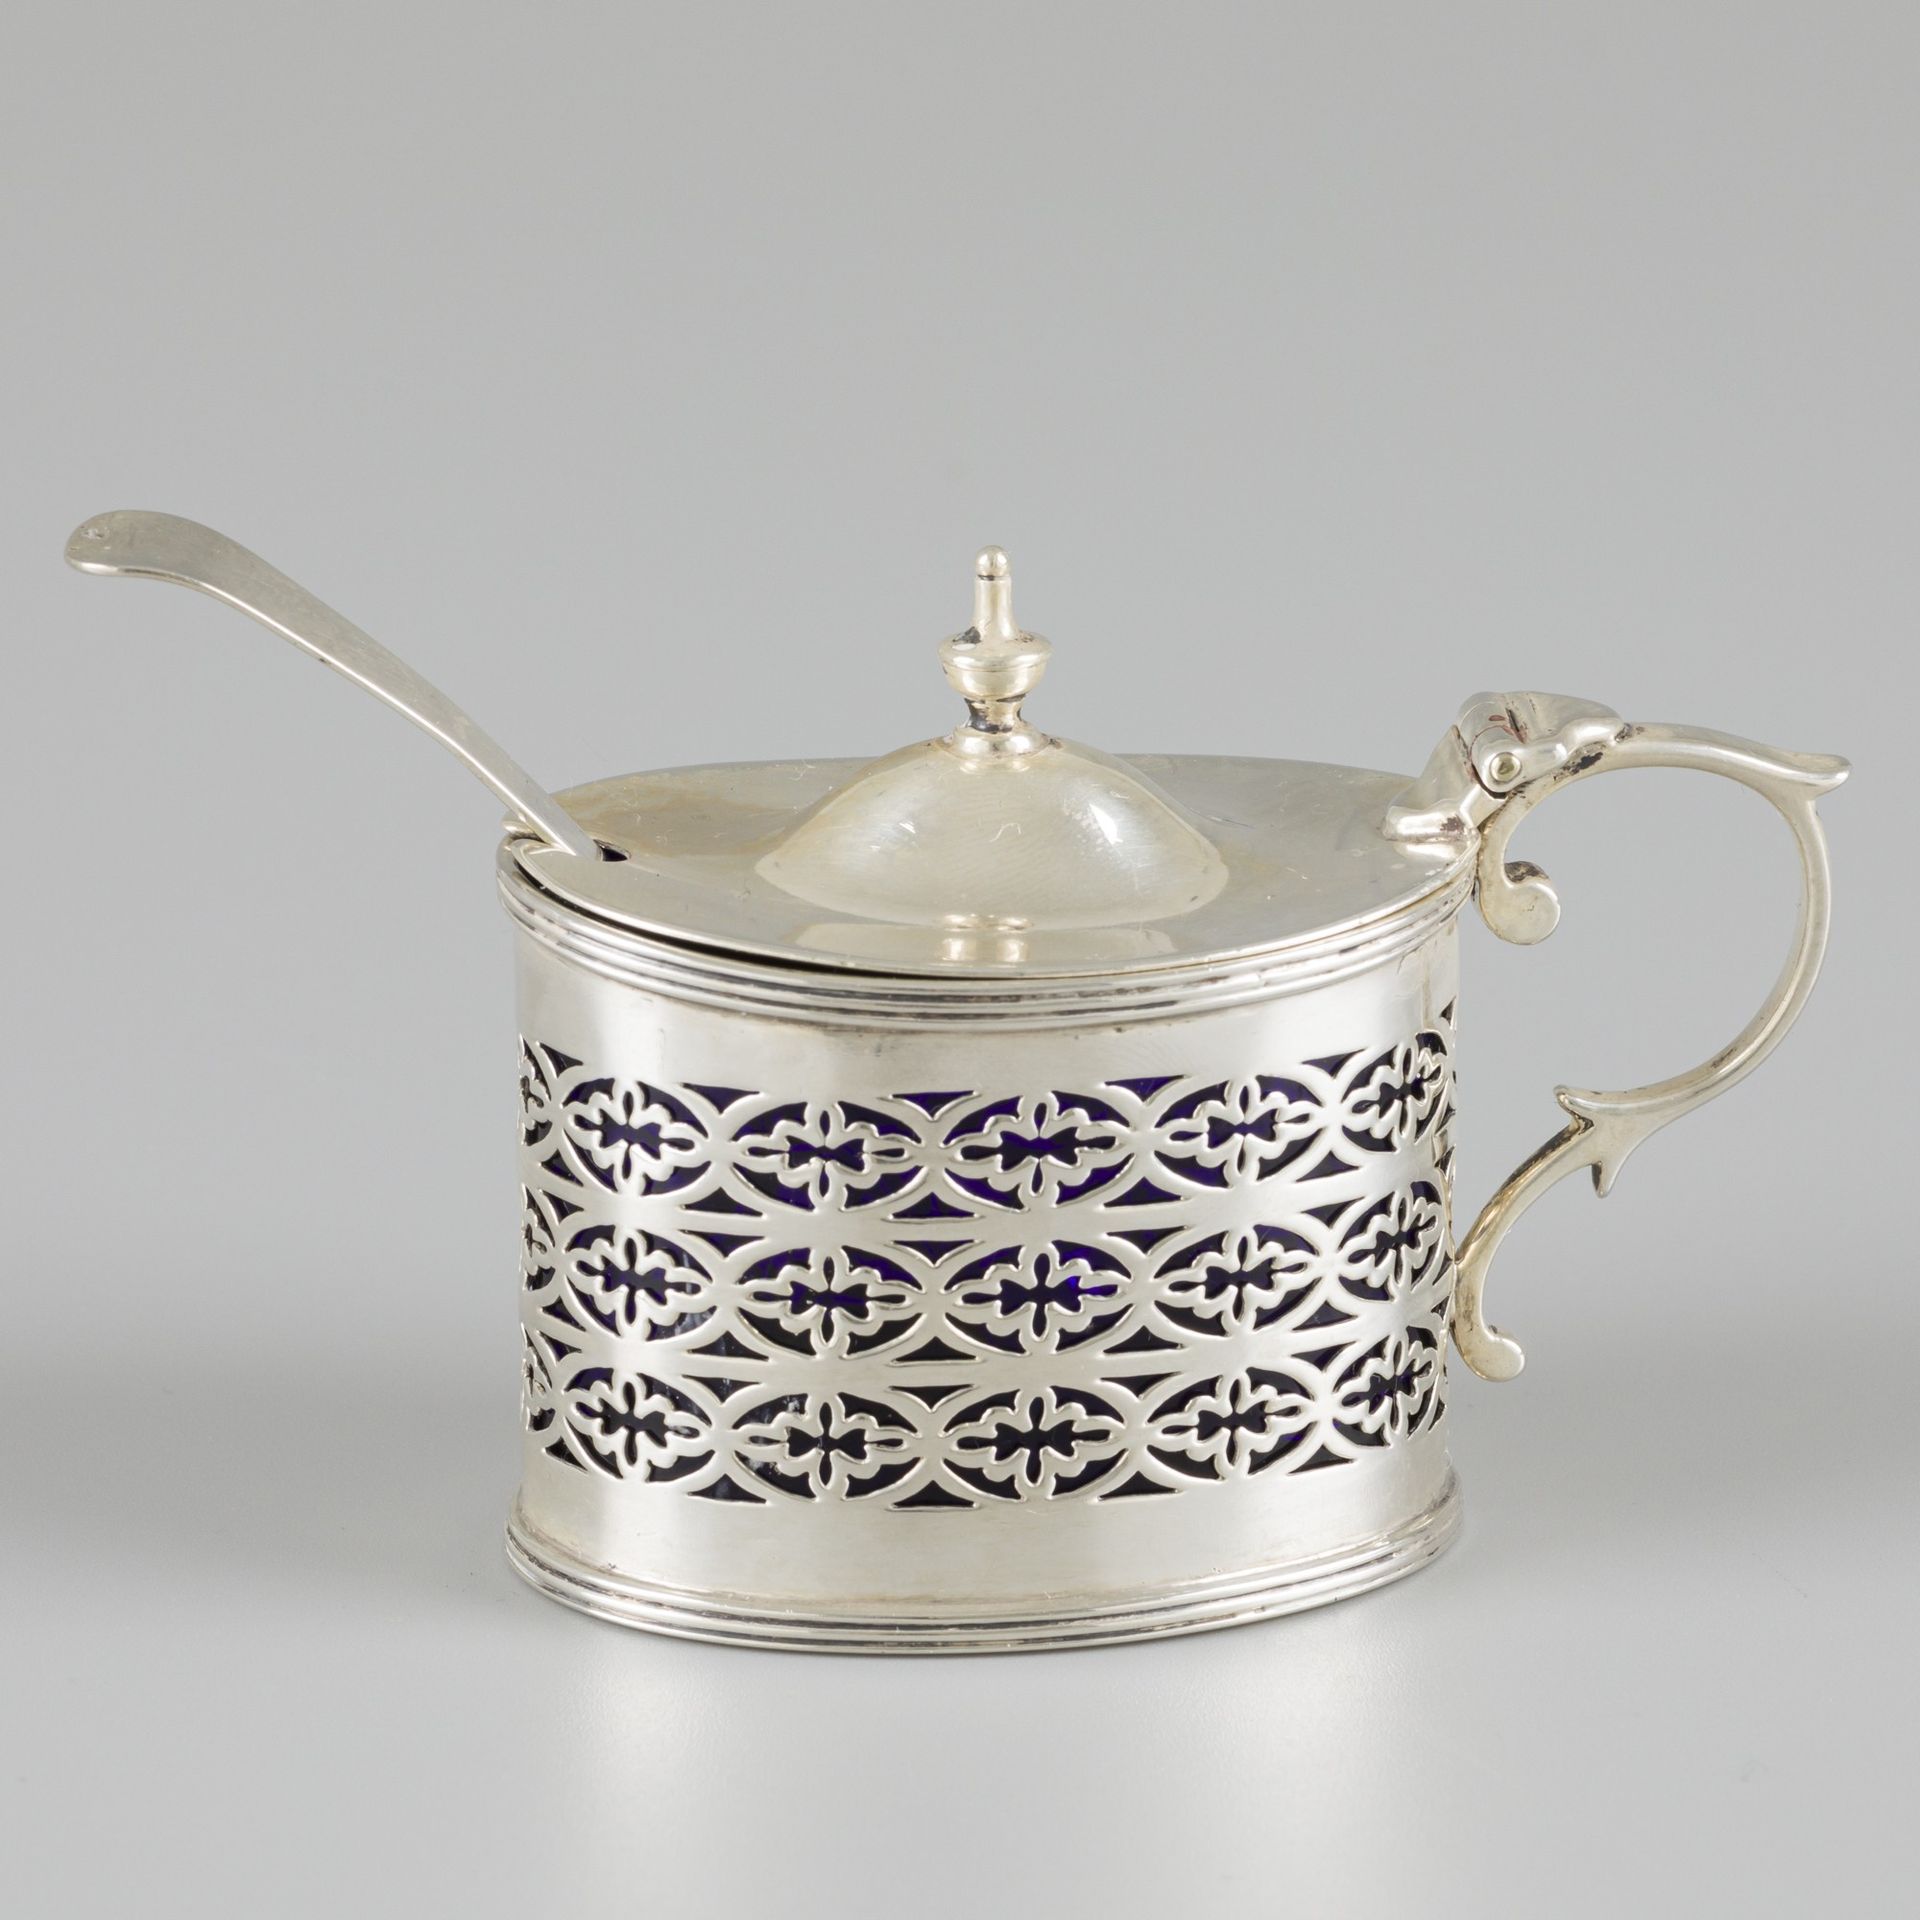 Mustard pot with spoon, silver. Modello ovale con coperchio incernierato, bordi &hellip;